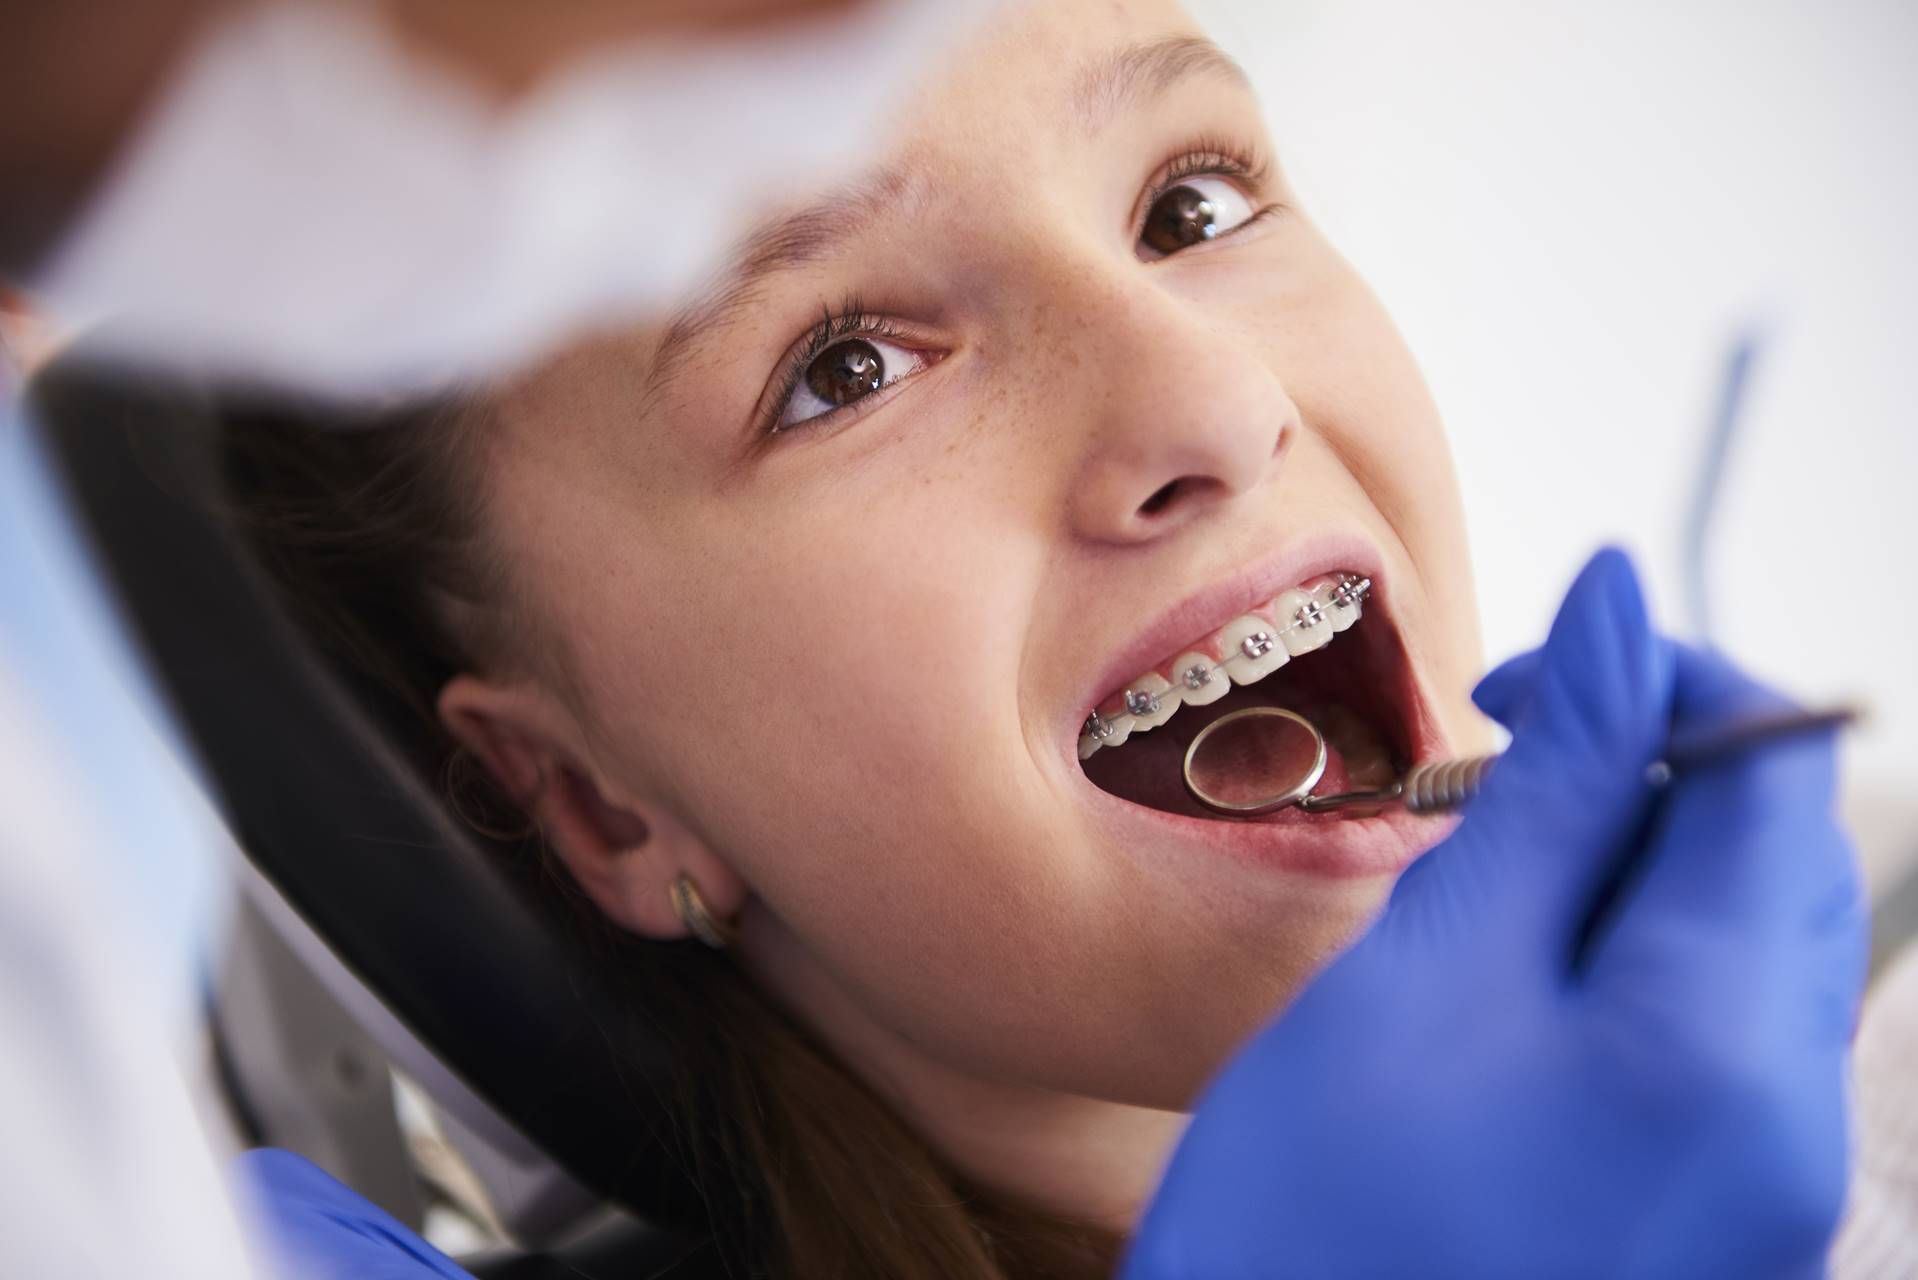 Apparecchi dentali – Quando servono e tipologie